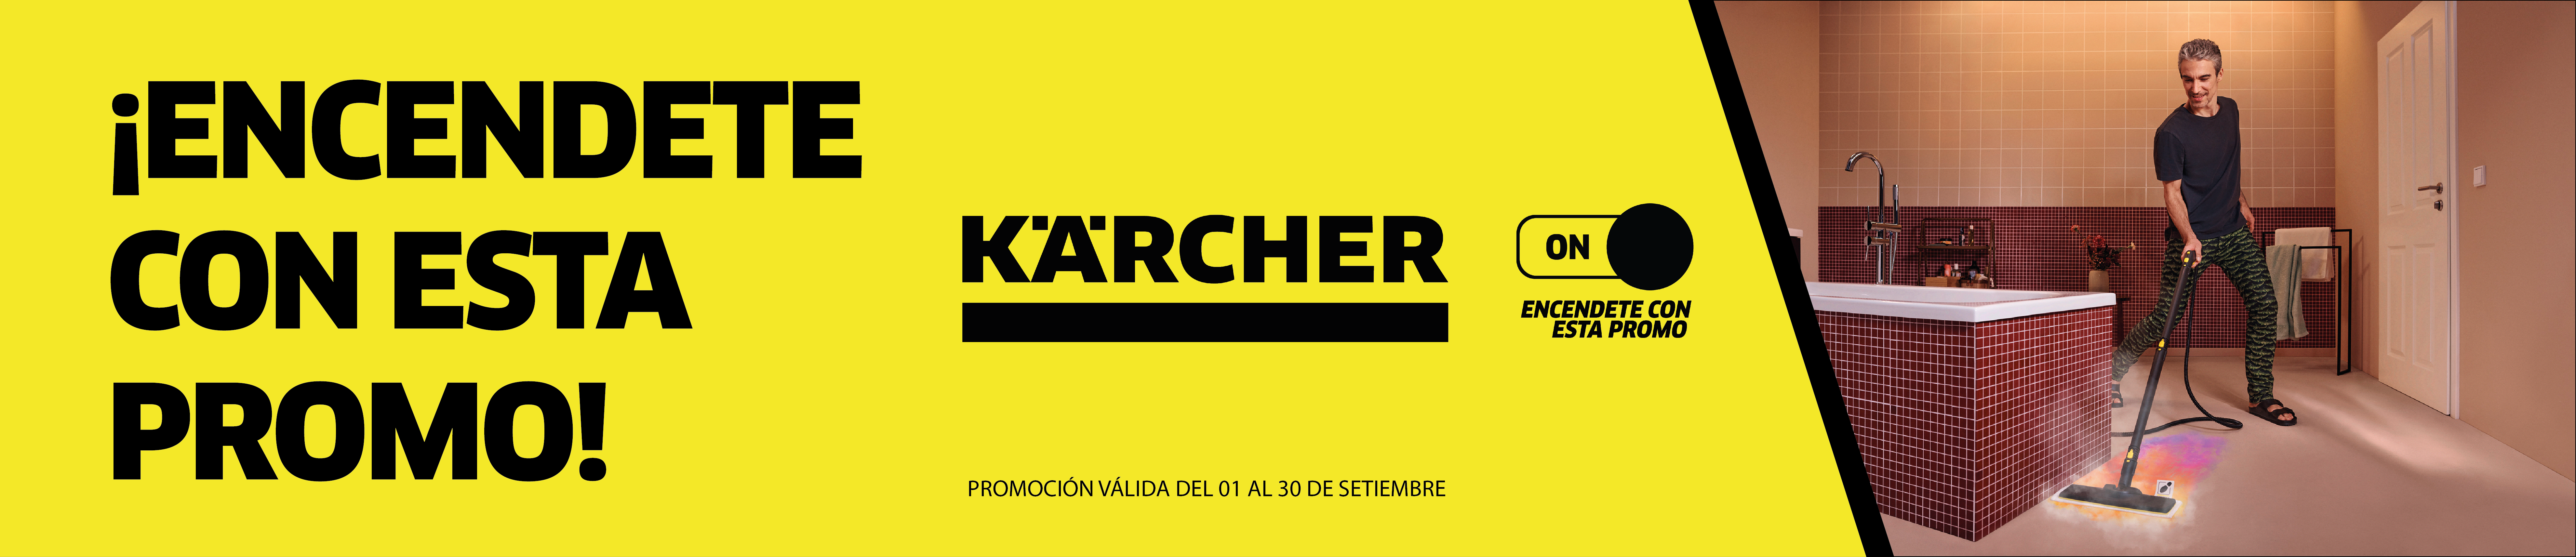 Promo Karcher septiembre